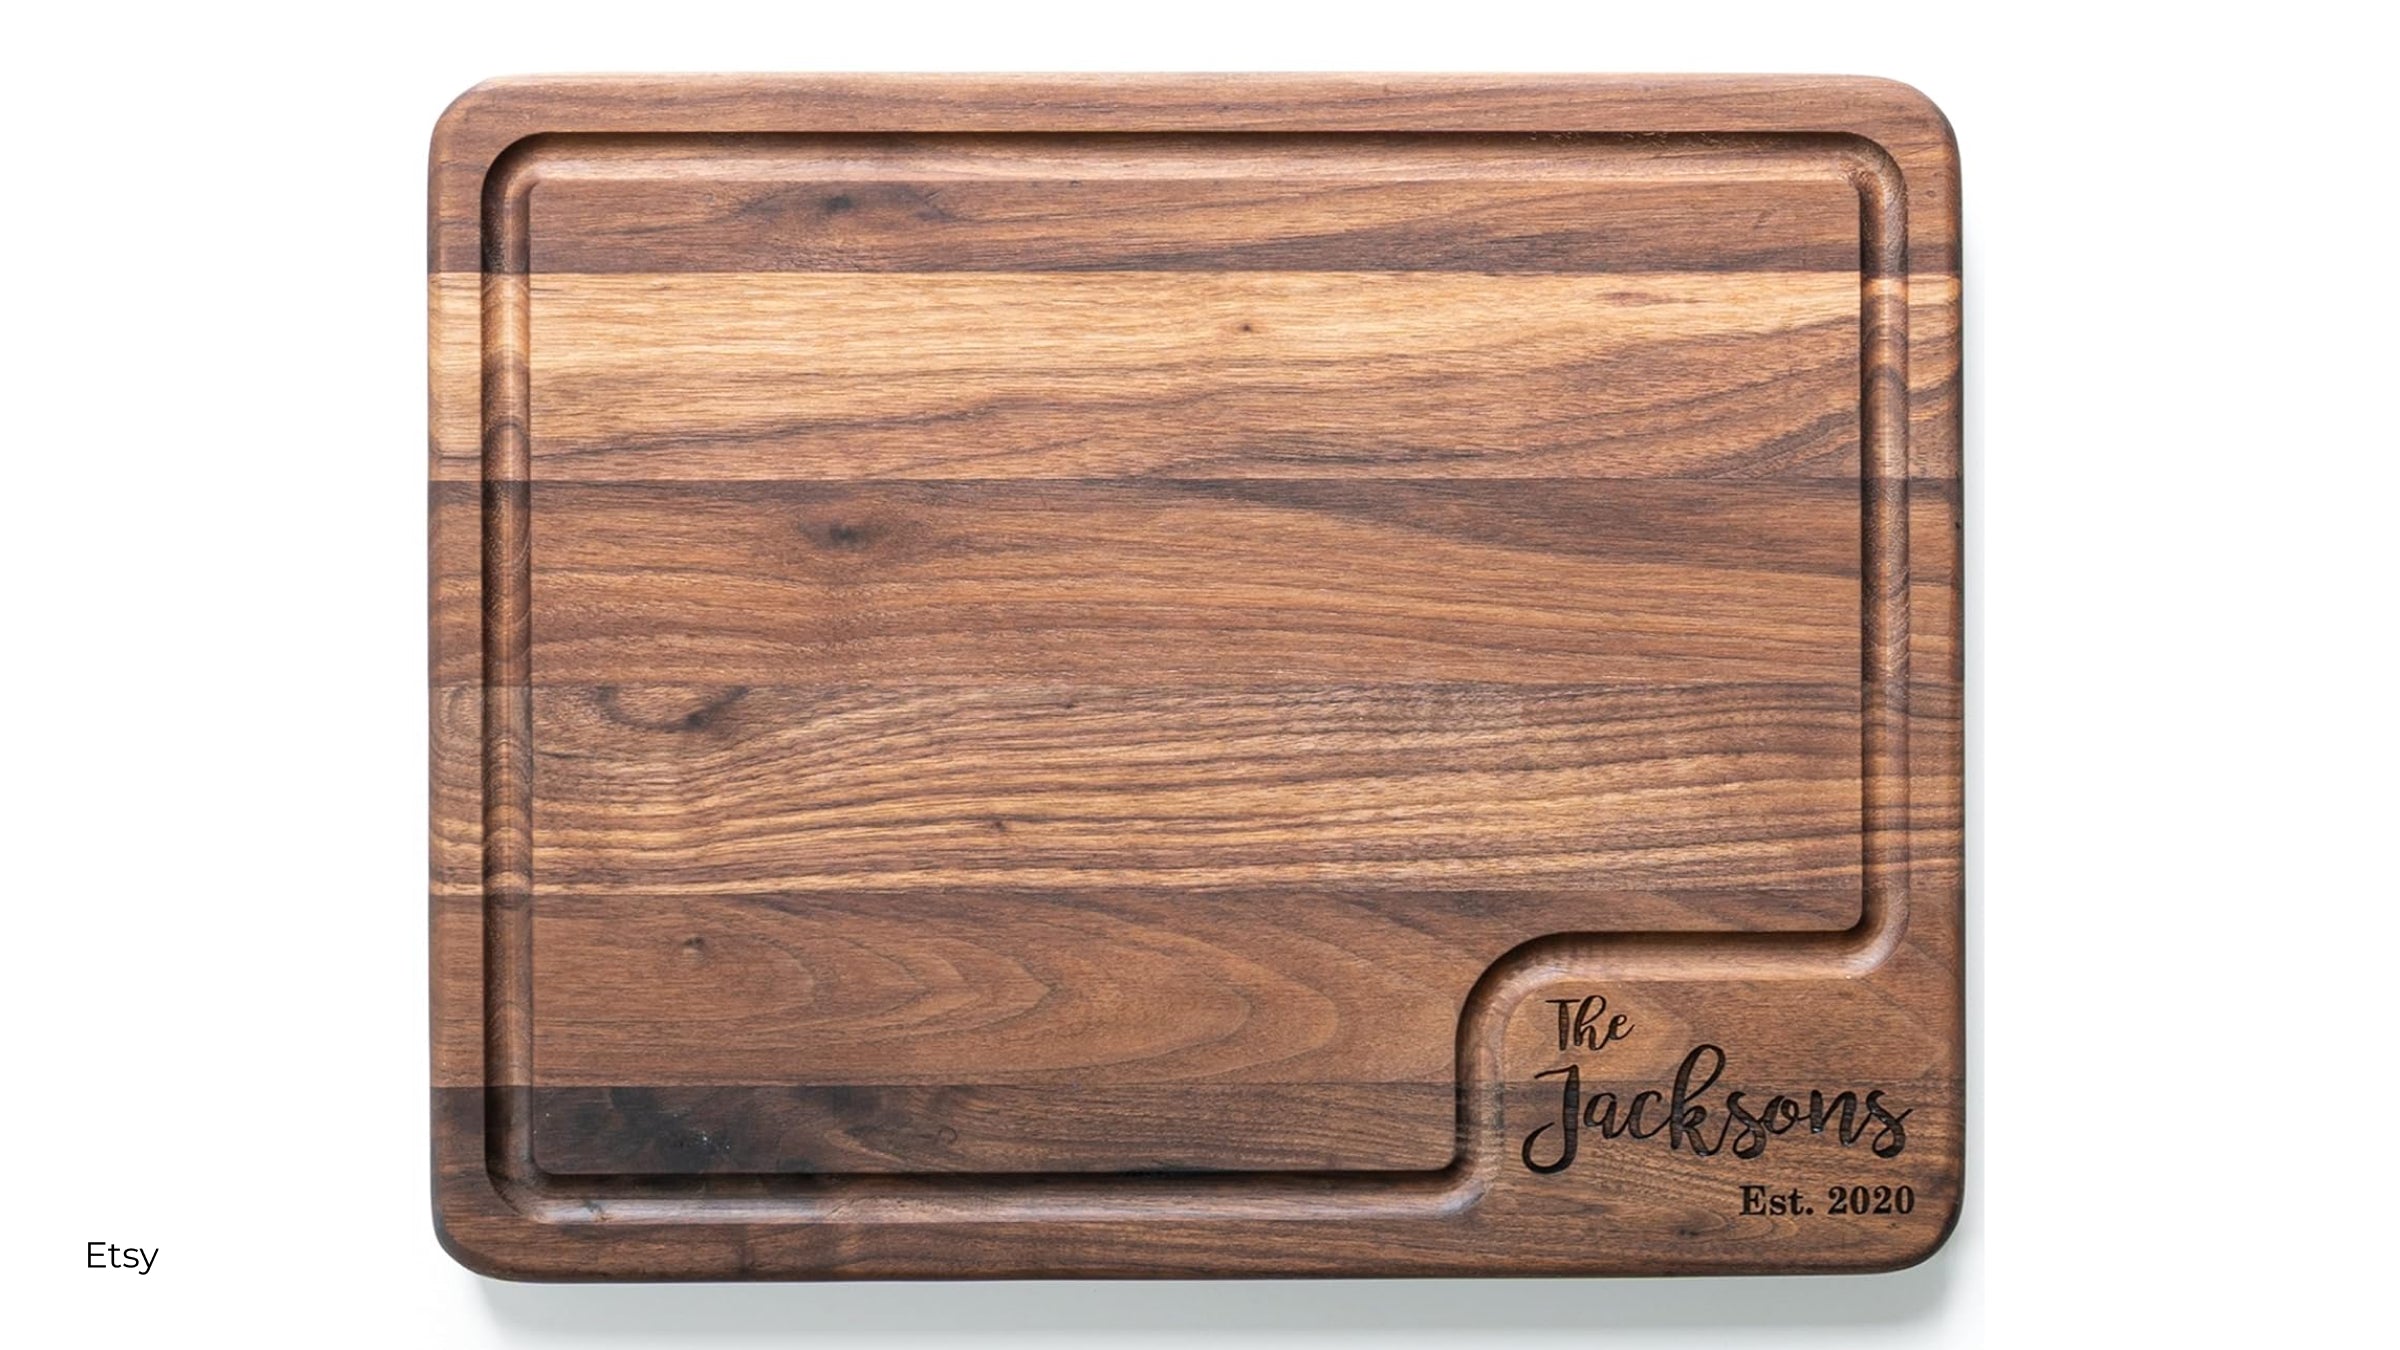 Custom wood cutting board from Etsy